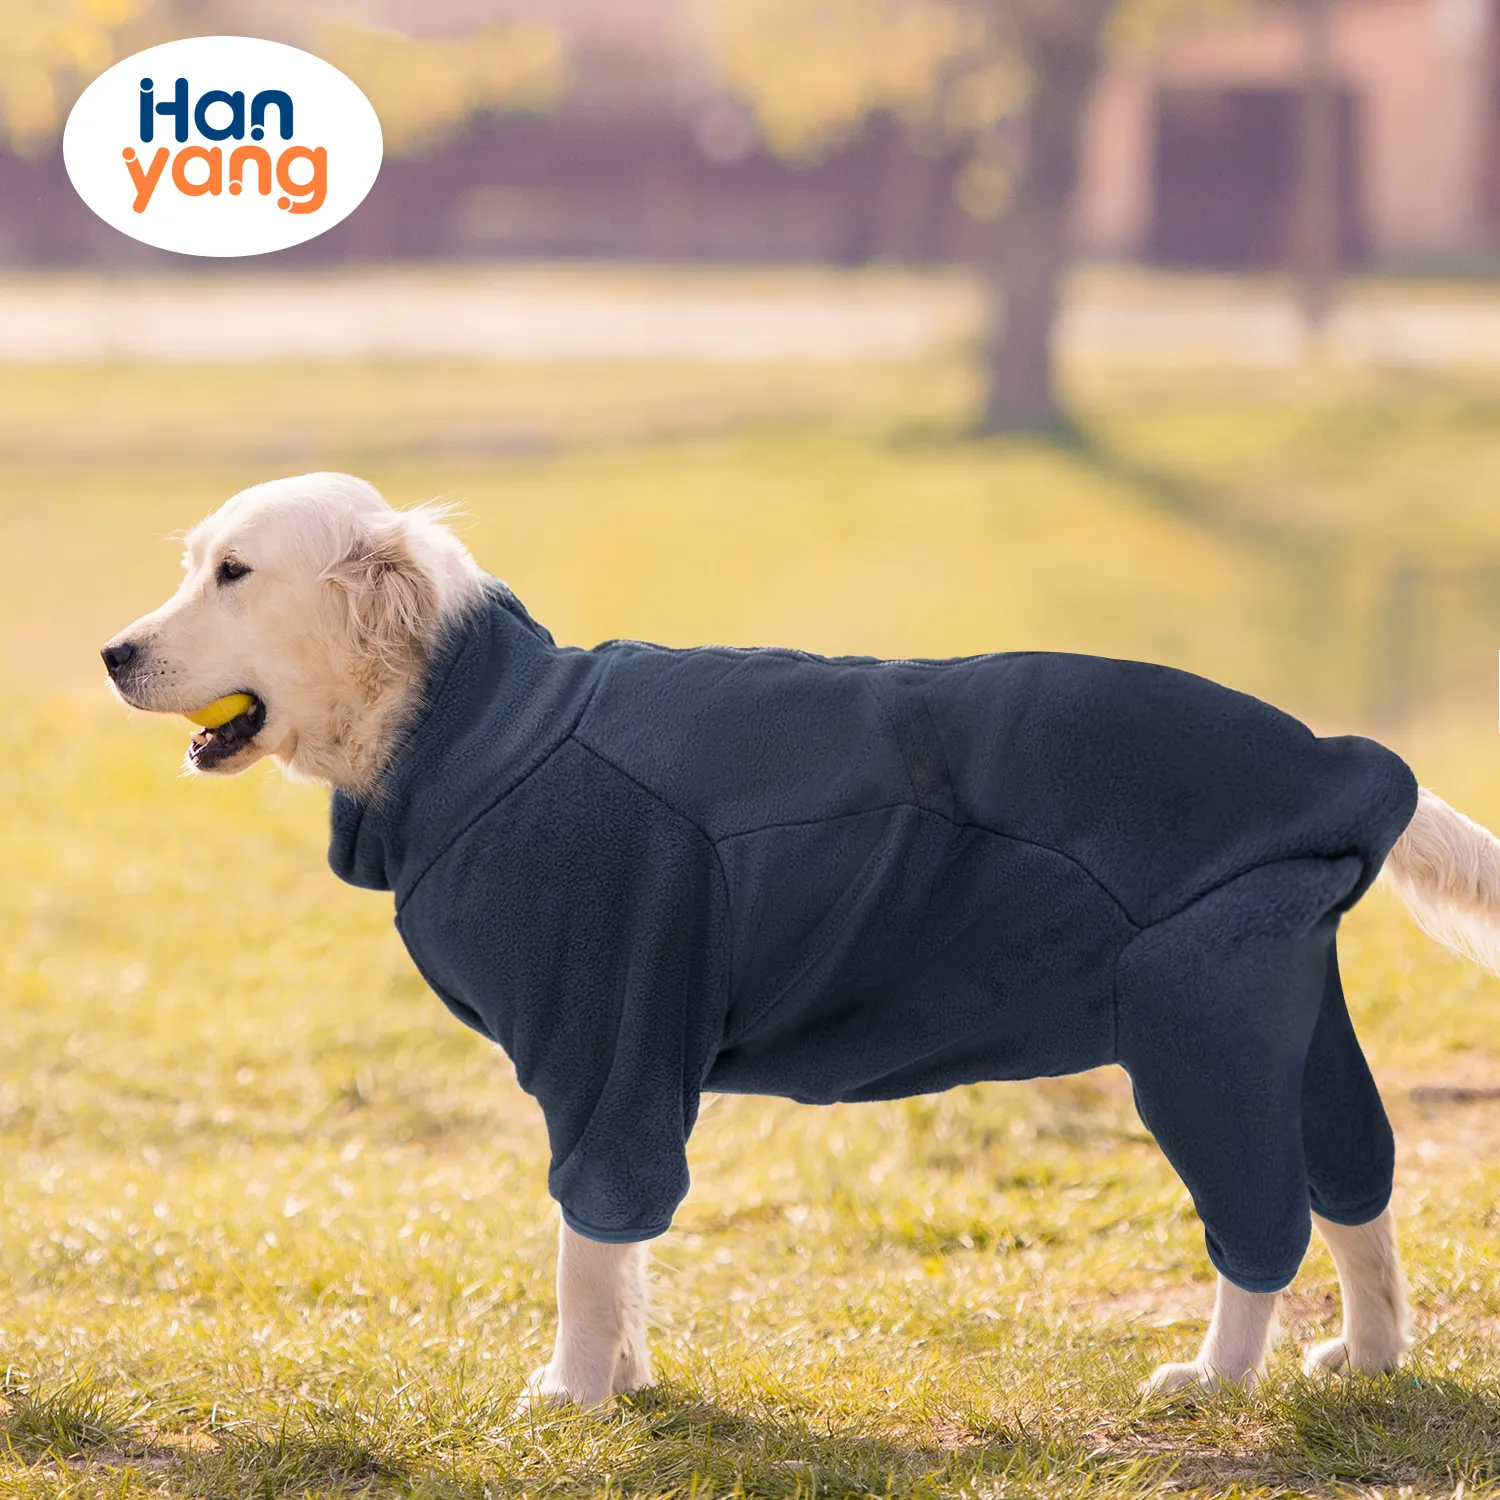 HanYang OEM cappotto per cani Pullover personalizzato, cappotti caldi per cani di piccola taglia, giacca per cani in pile polare antivento gilet invernale per il freddo